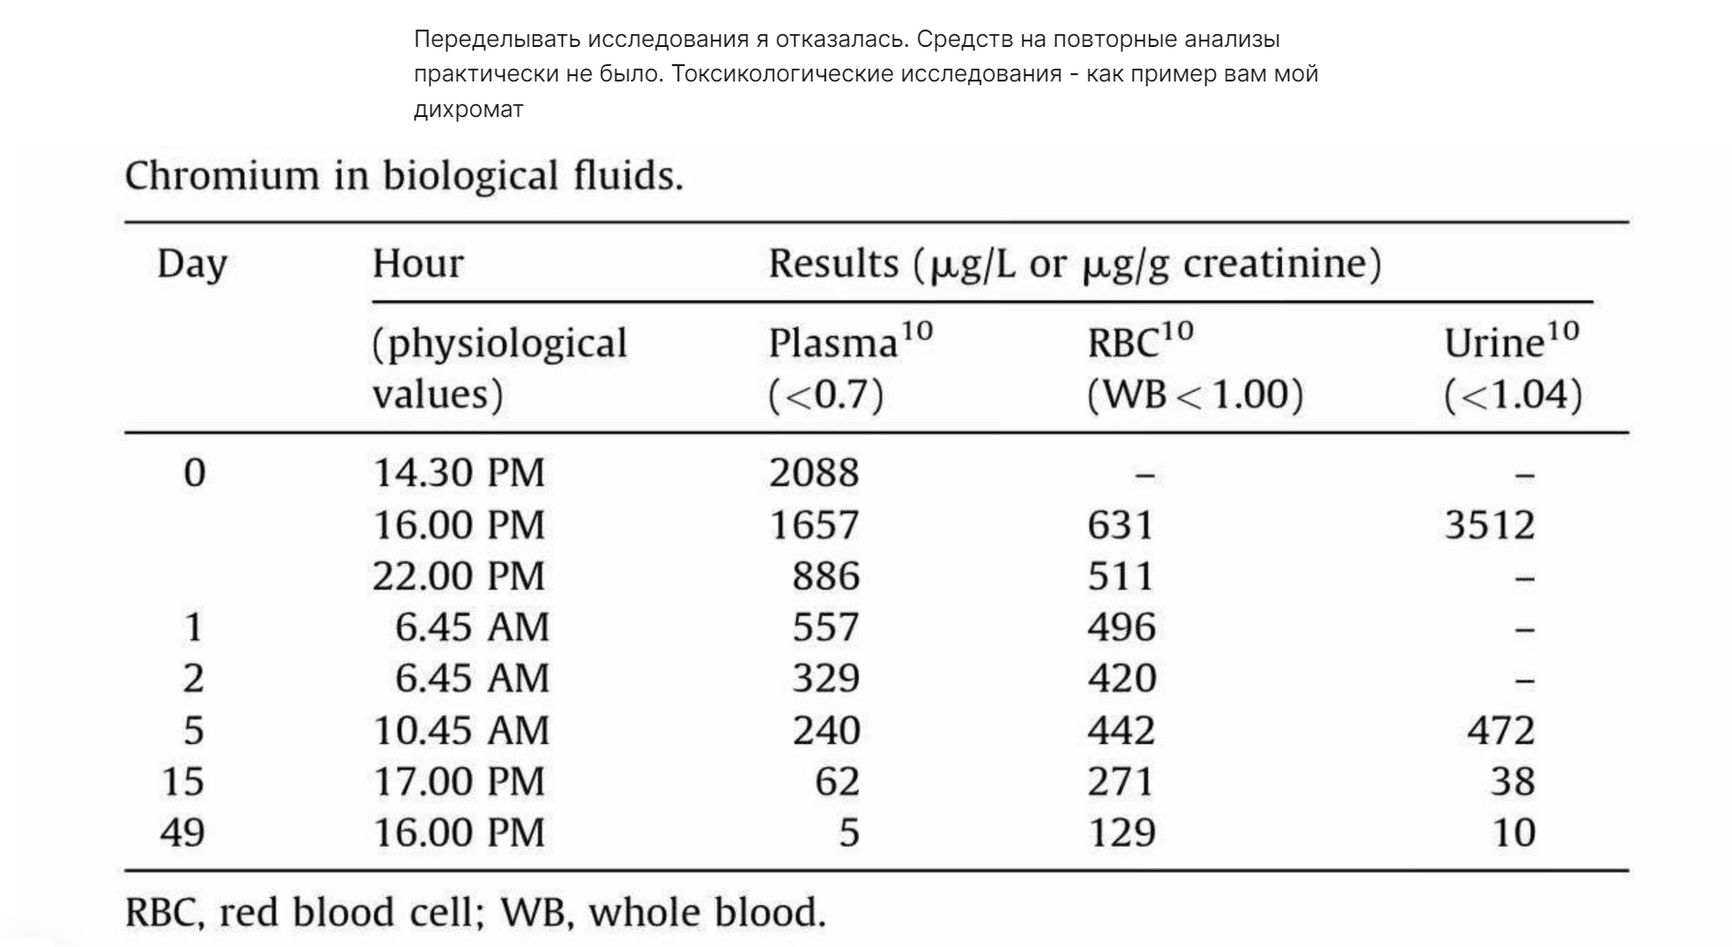 Фрагмент поста Вихаревой, где она публикует, как утверждается, результаты анализа на дихромат калия